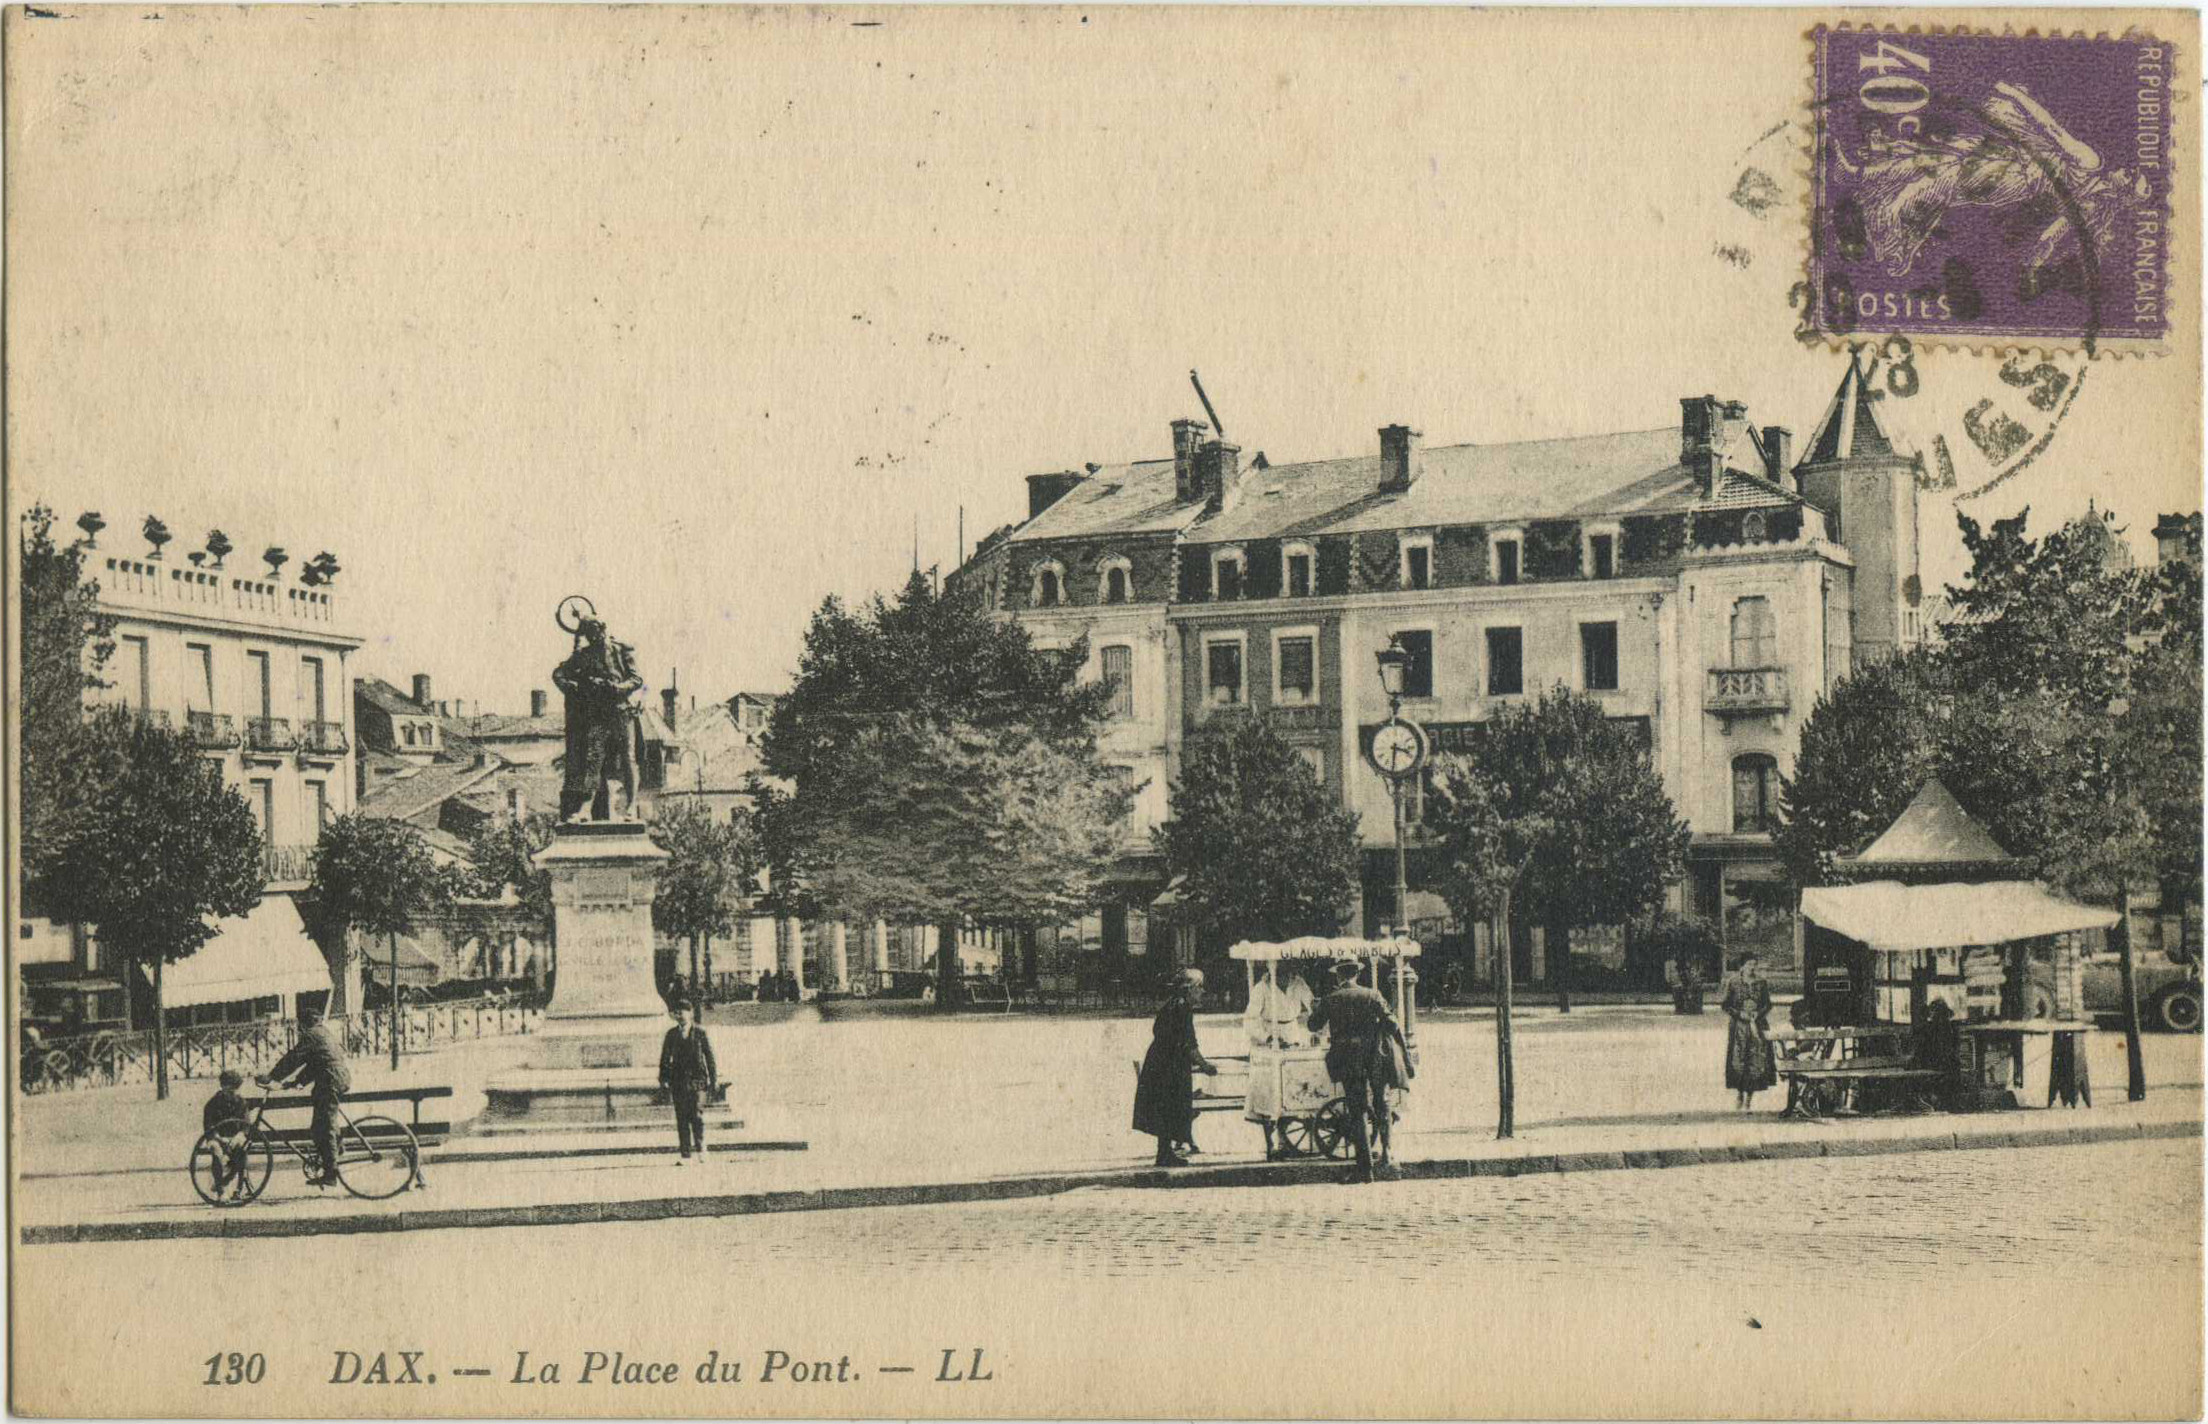 Dax - La Place du Pont.